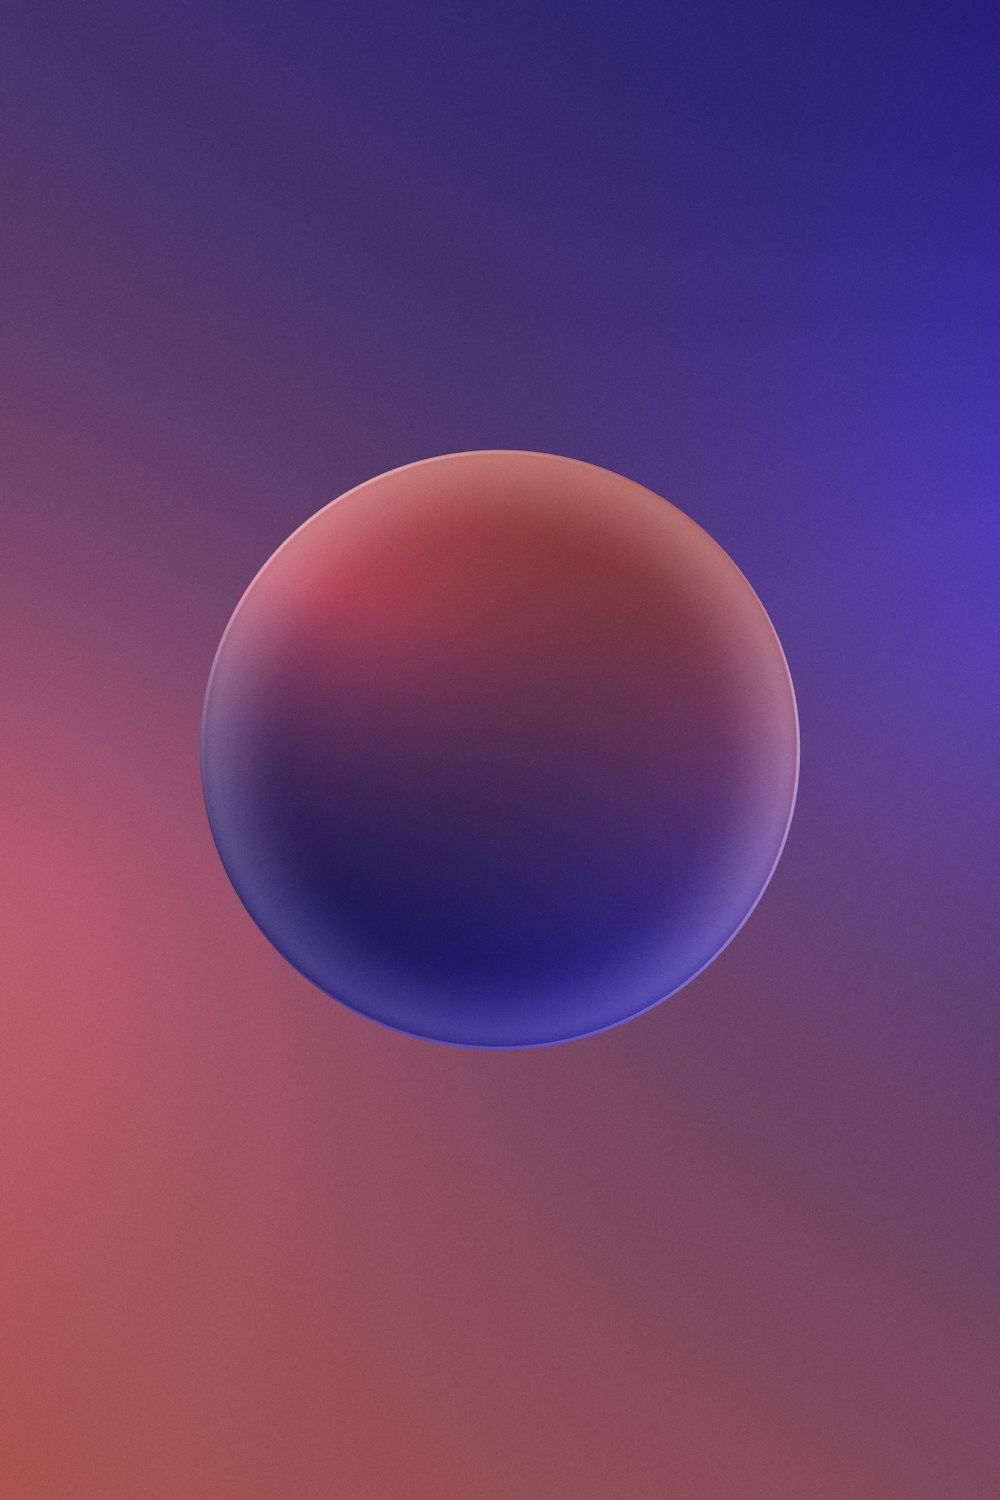 un fond rouge et violet avec un objet circulaire au milieu